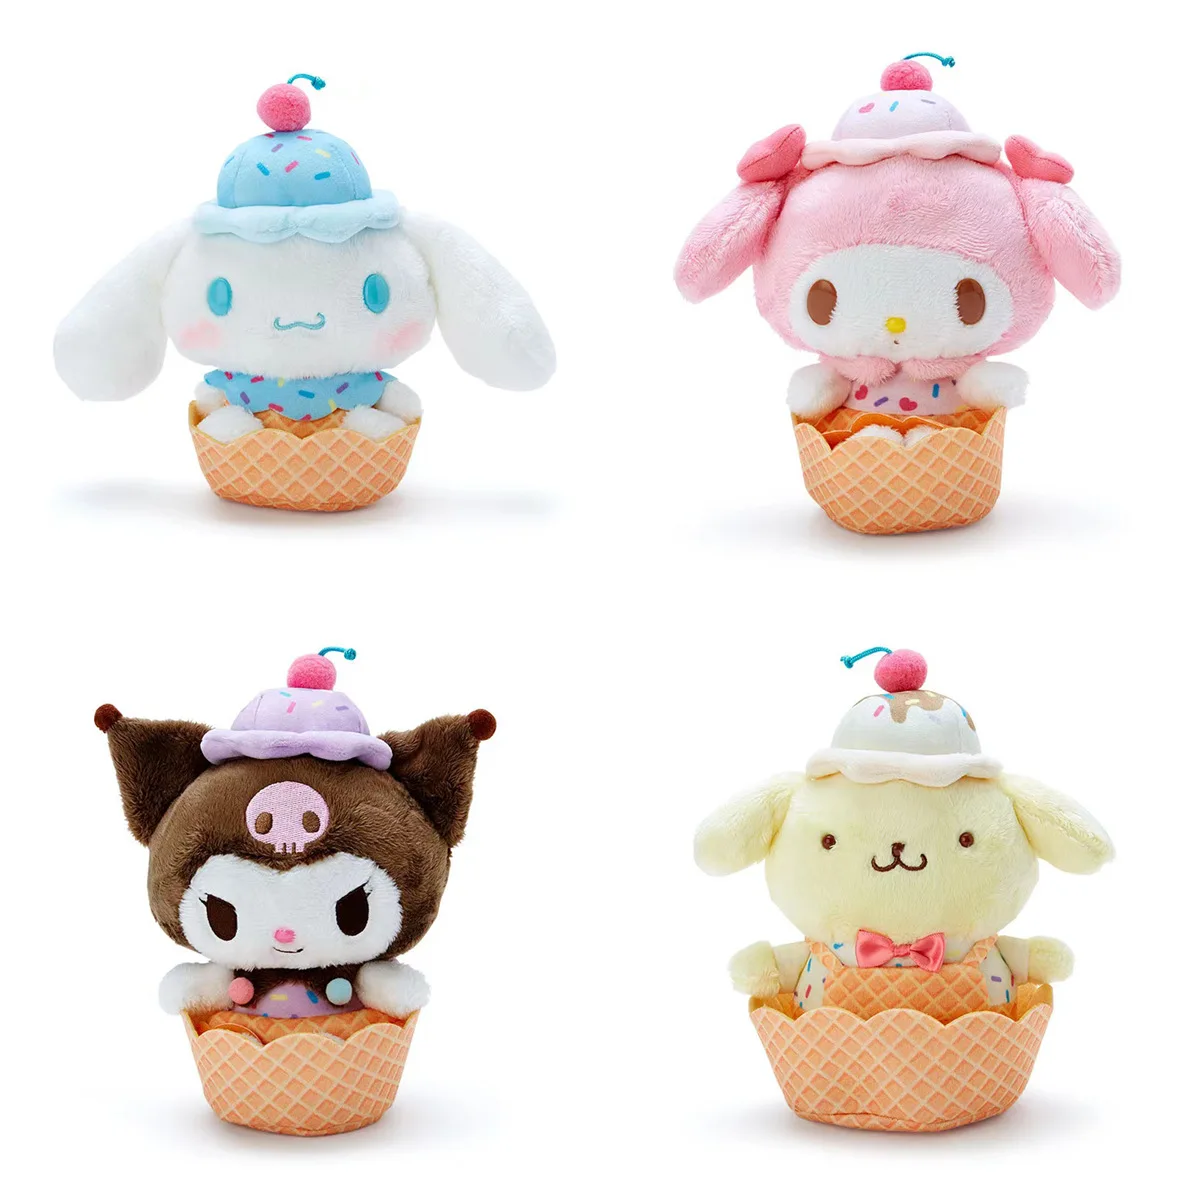 

12 см Kawai мультфильм Sanrio мороженое конусная серия Мелодия коричная кукла рюкзак Подвеска Игрушка украшения детский подарок на день рождения